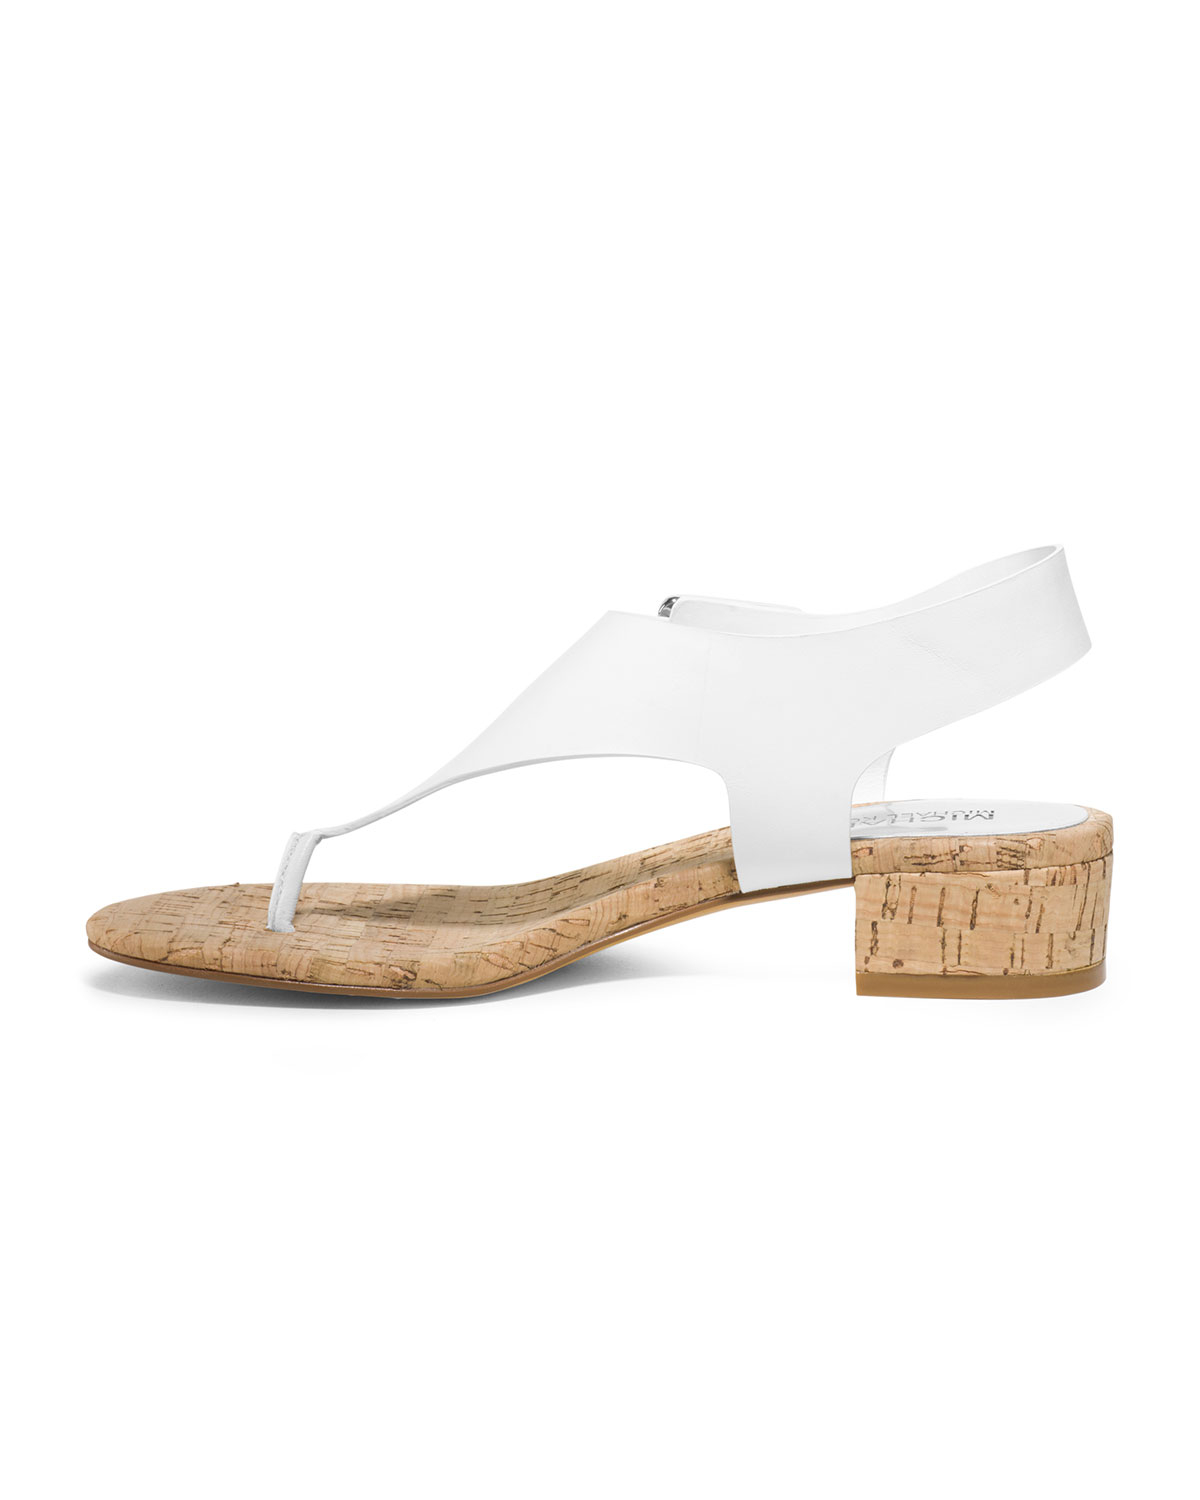 Michael Kors London Thong Sandal in White | Lyst